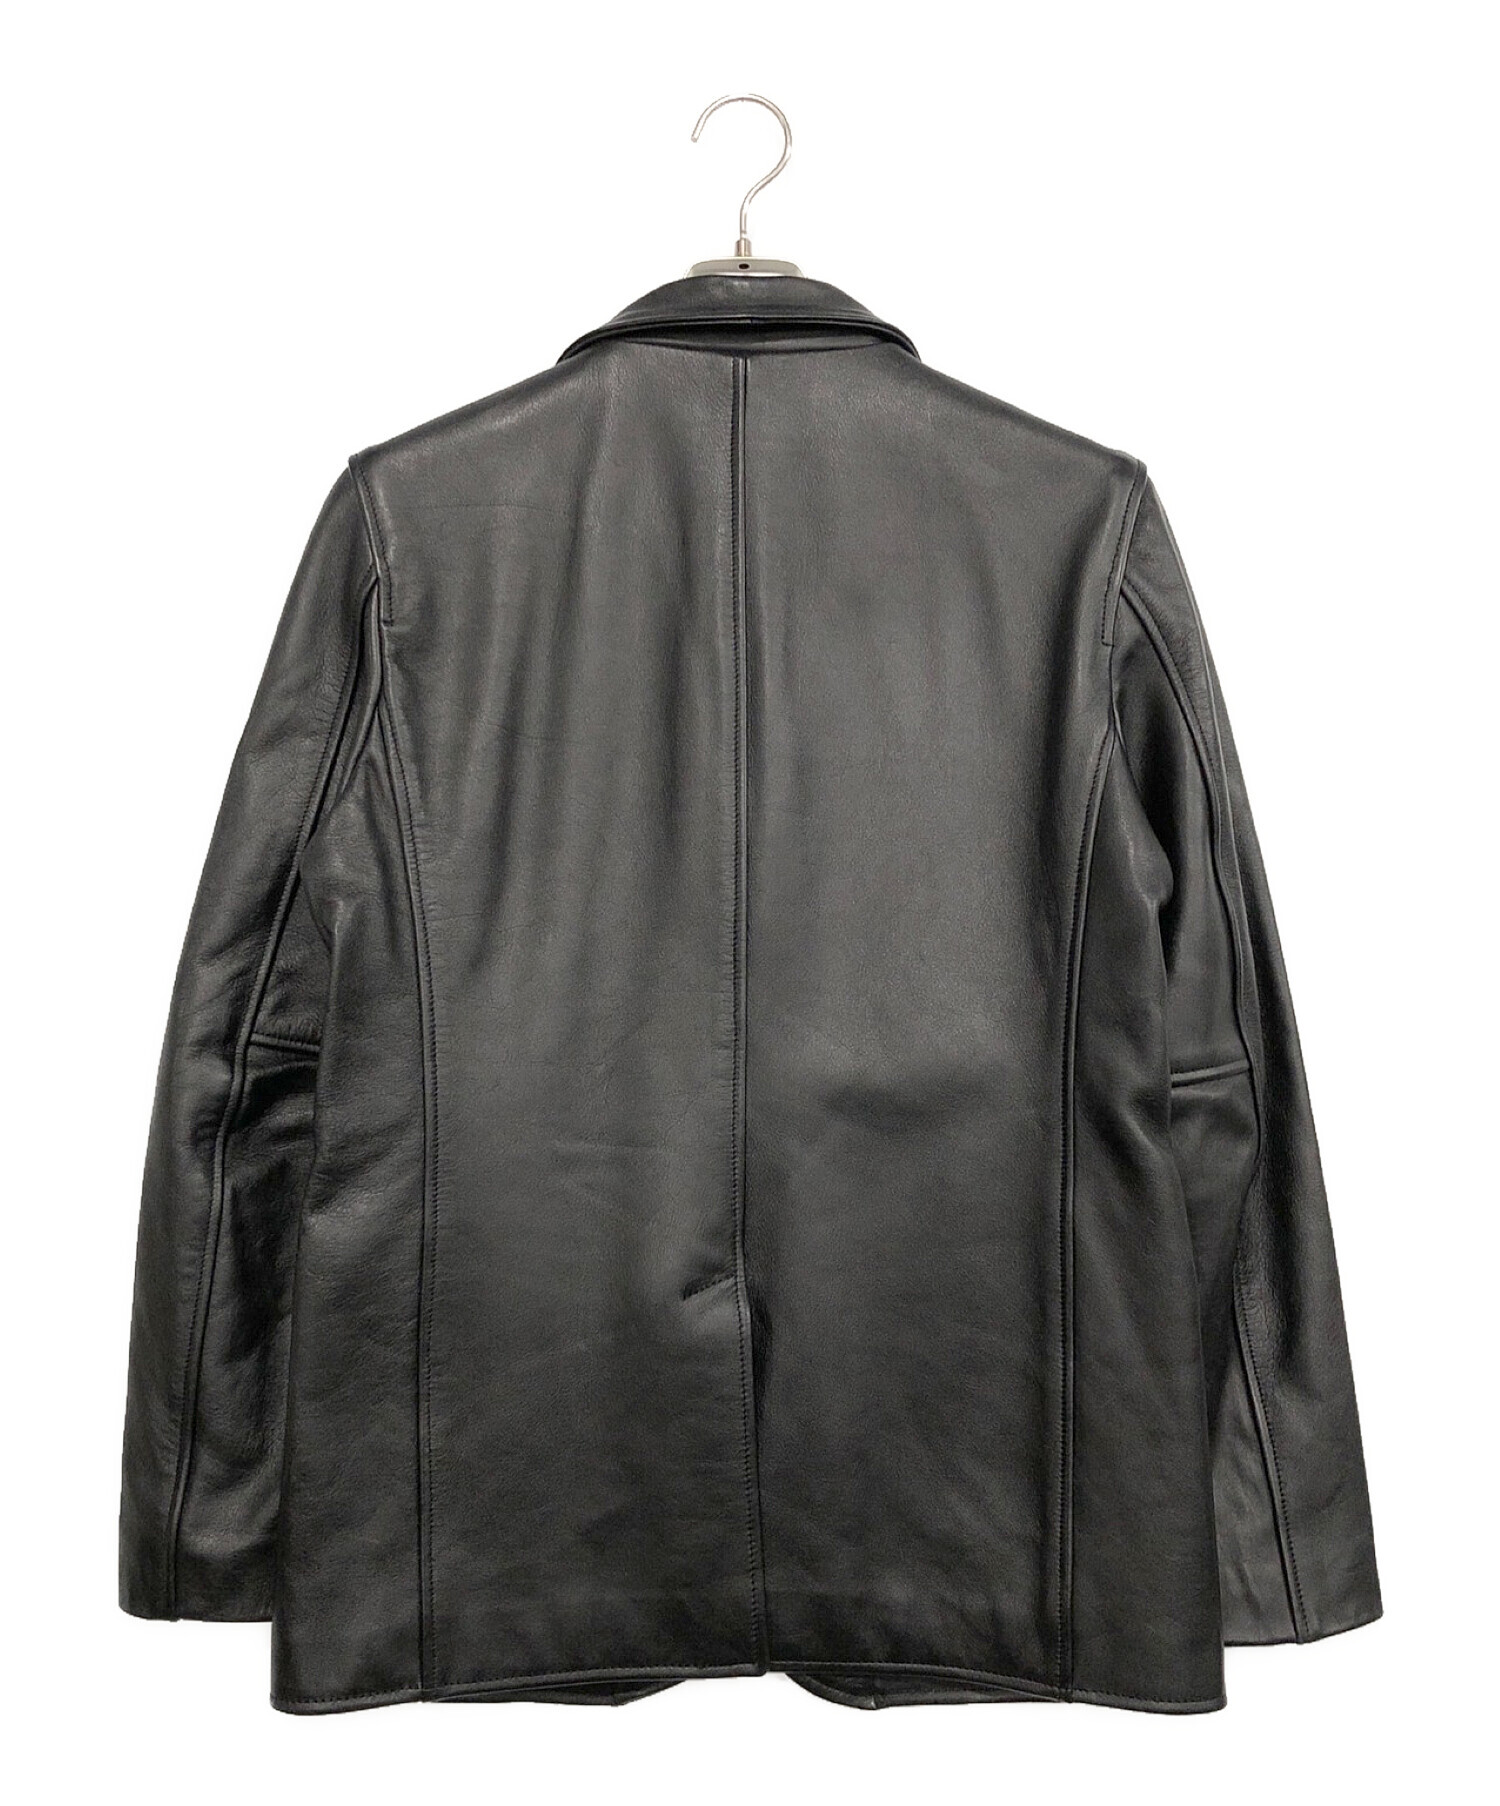 BACKDROP (バックドロップ) レザーテーラードジャケット ブラック サイズ:L